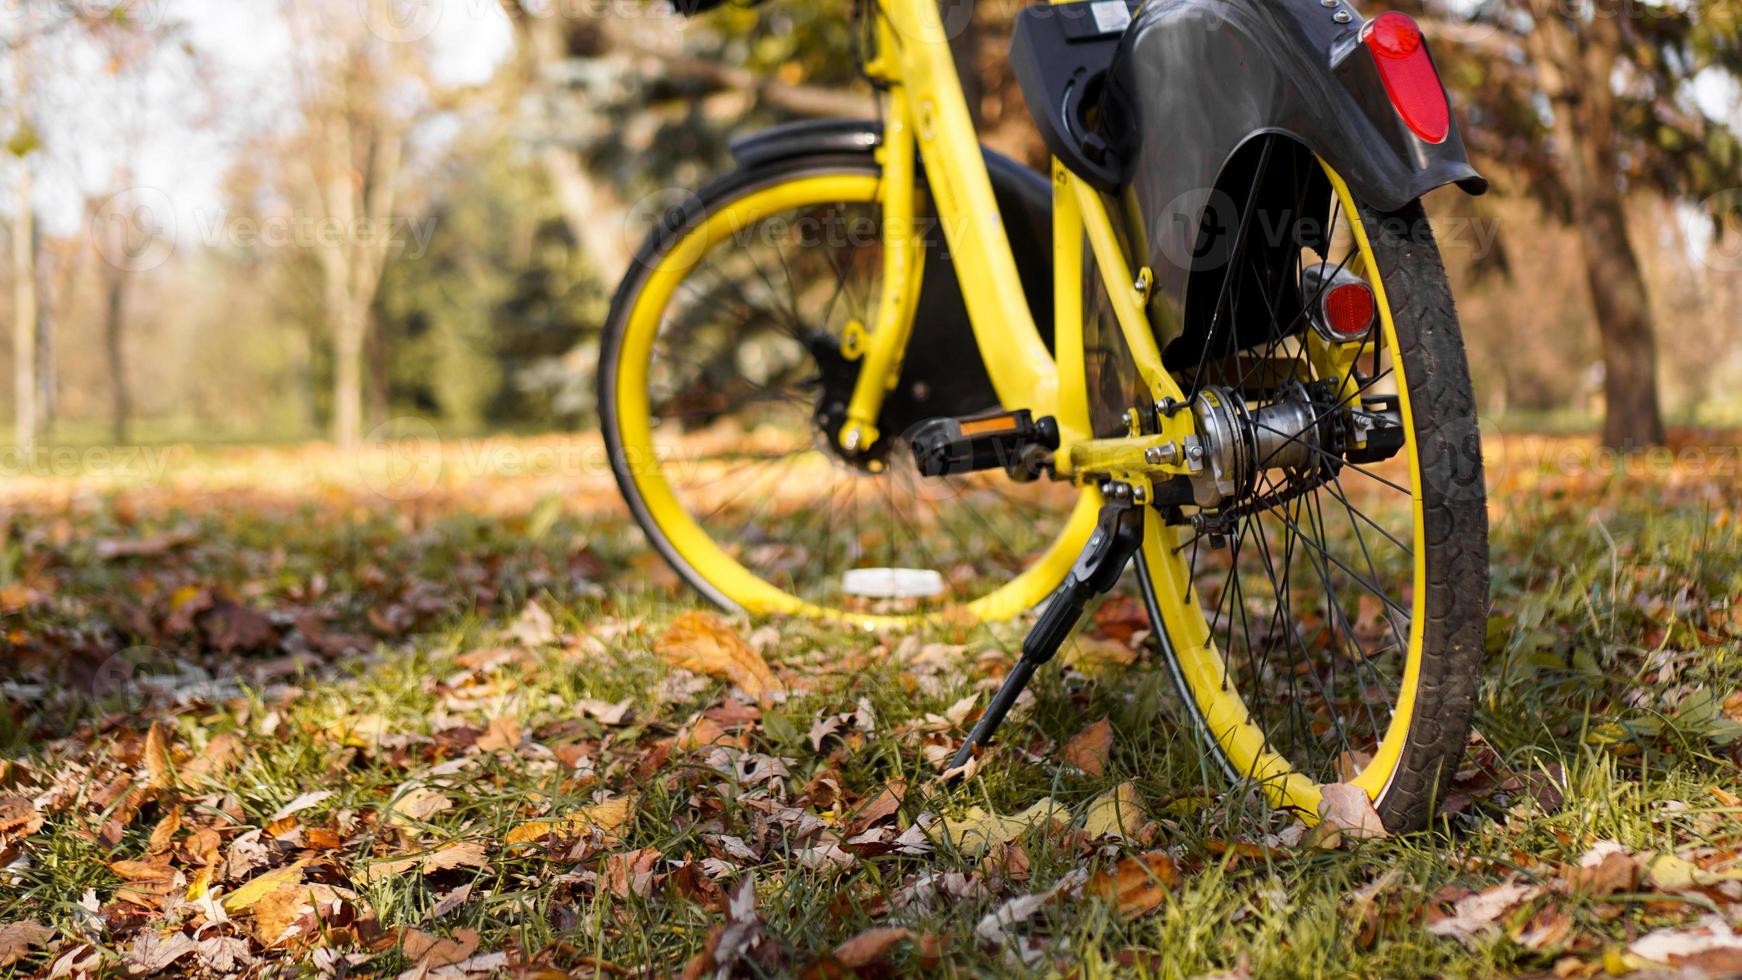 gele fiets met gevallen bladeren in de ondergaande zon. herfst park foto